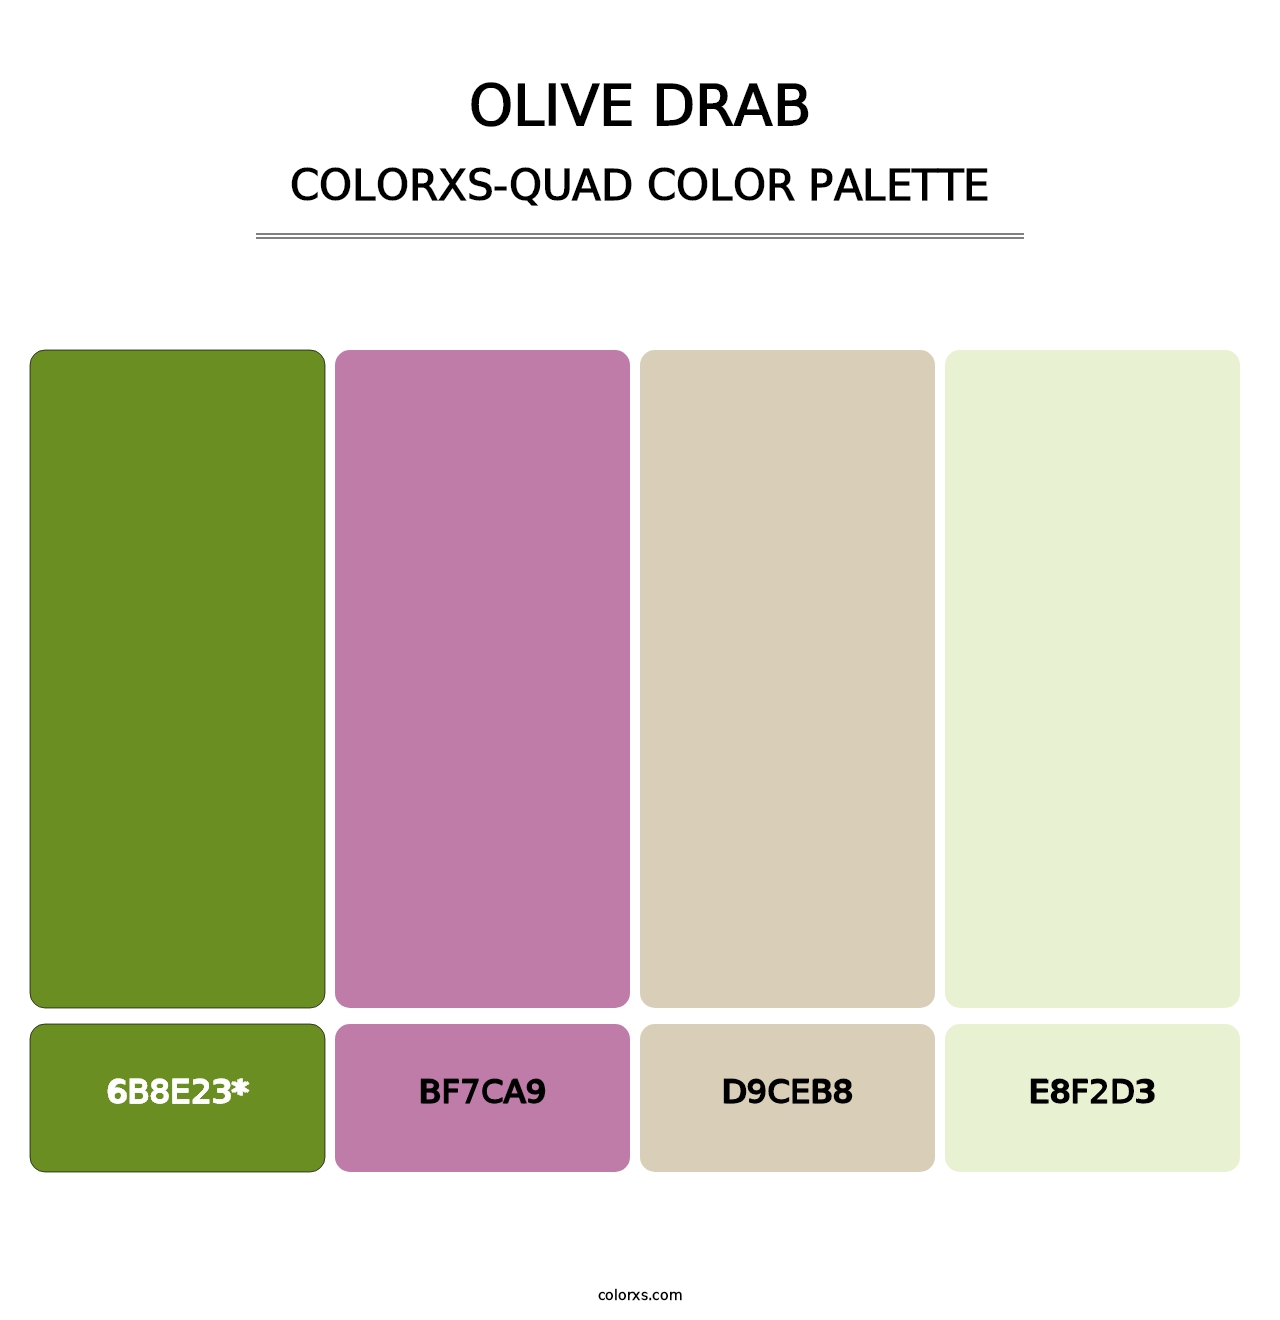 Olive Drab - Colorxs Quad Palette